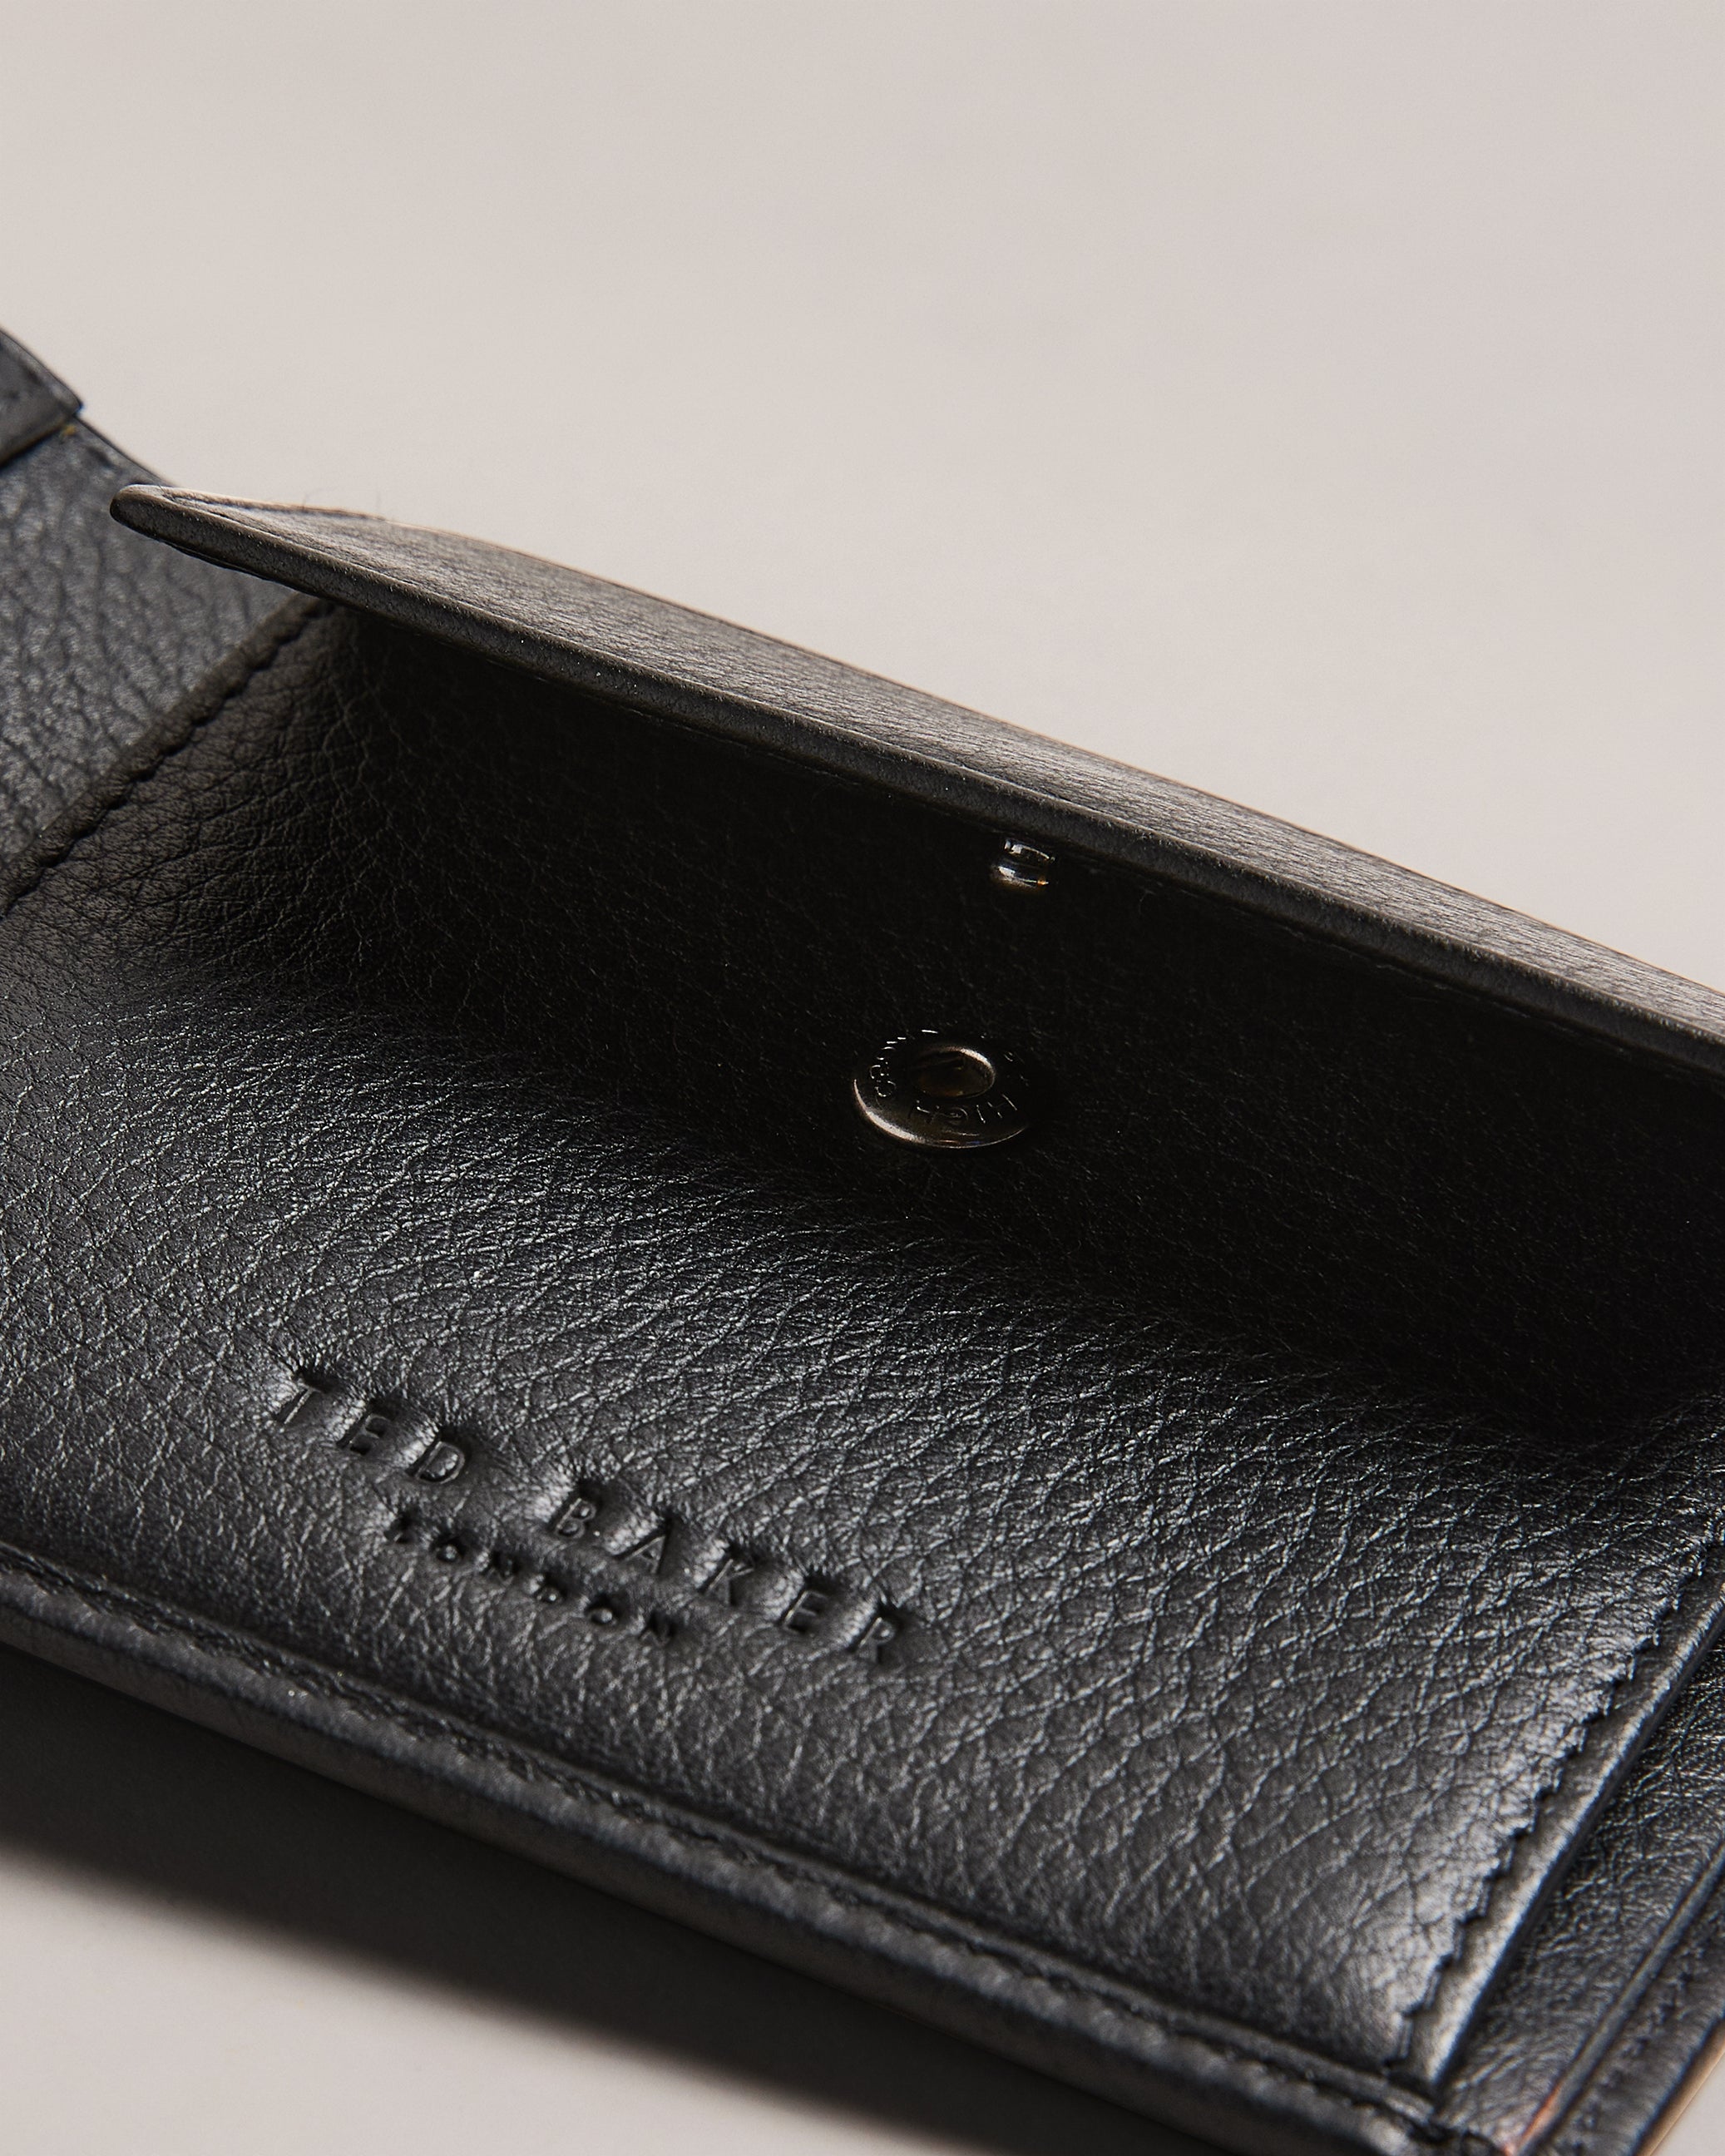 Evon Striped Bifold Wallet Black